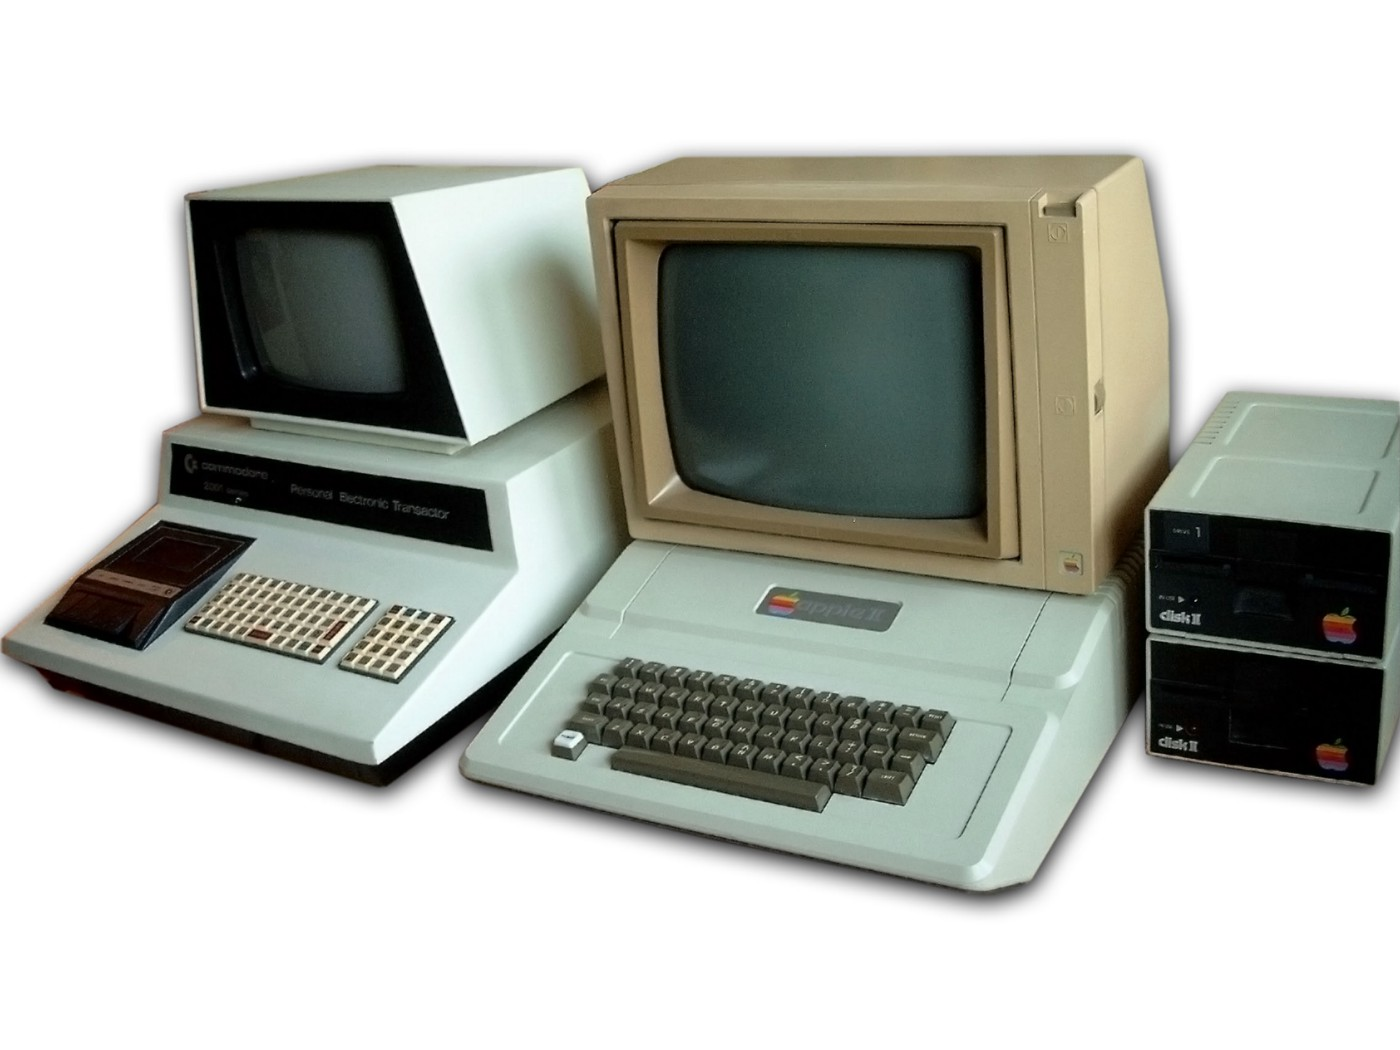 Год выпуска персонального компьютера. Apple 2 компьютер. ЭВМ 4 поколения Apple 1. Эпл 2 1977. Эппл 2 компьютер 1977.